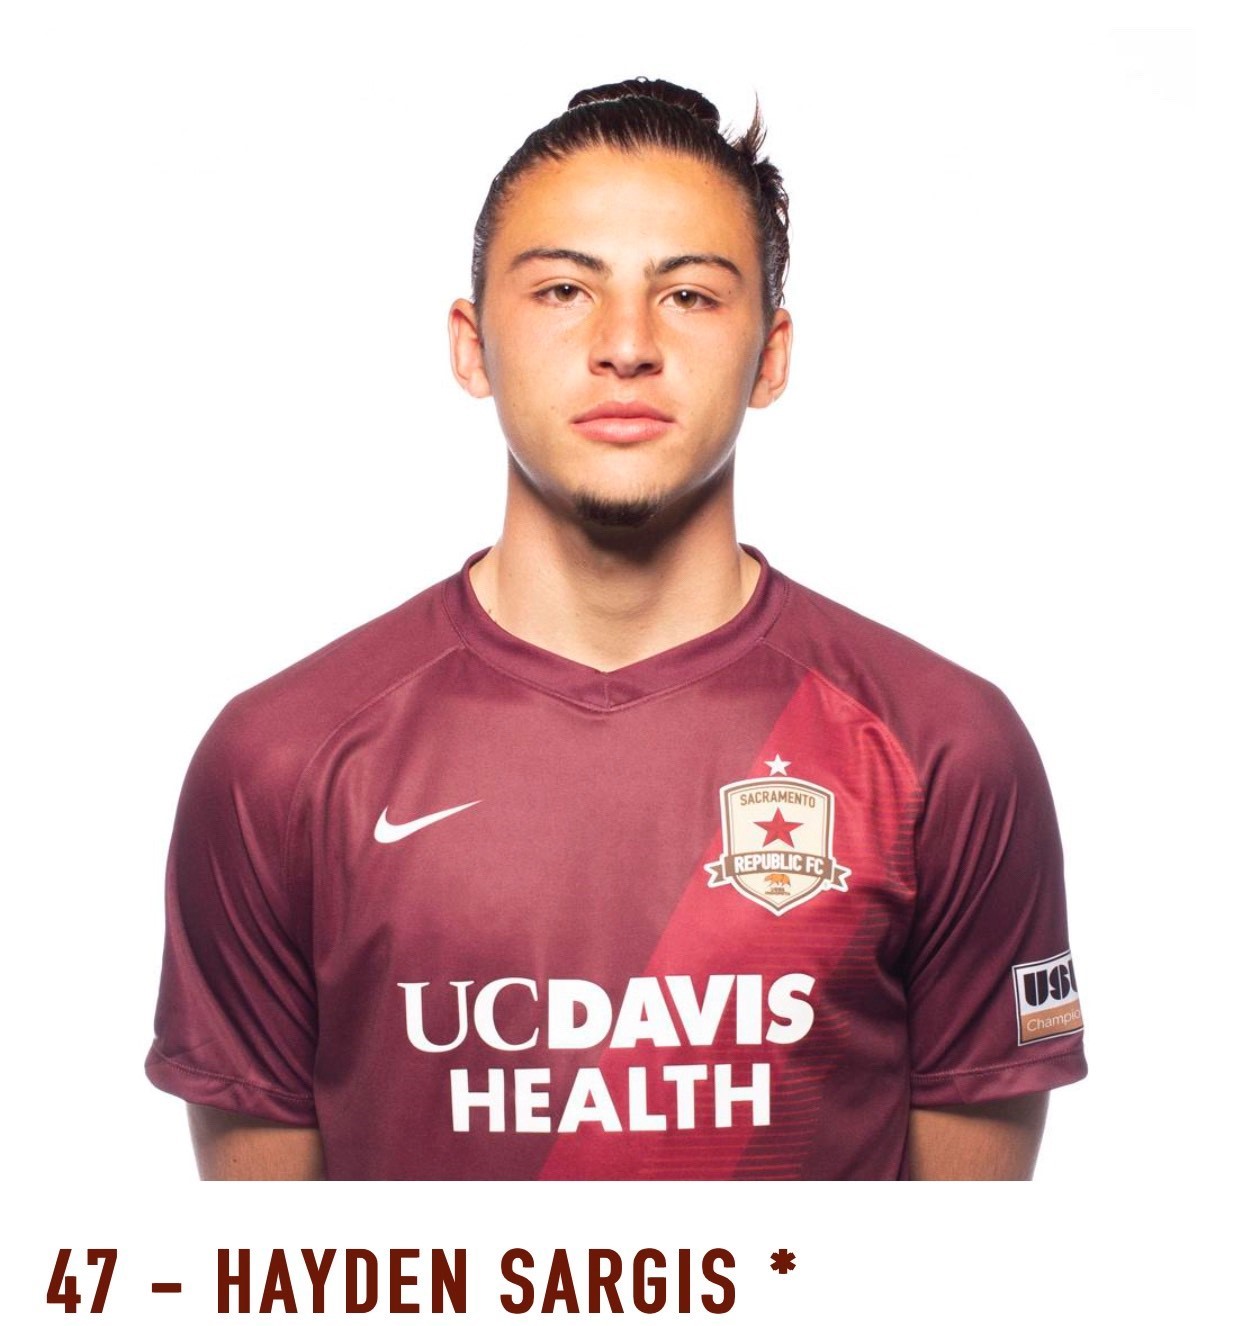 Hayden Sargis